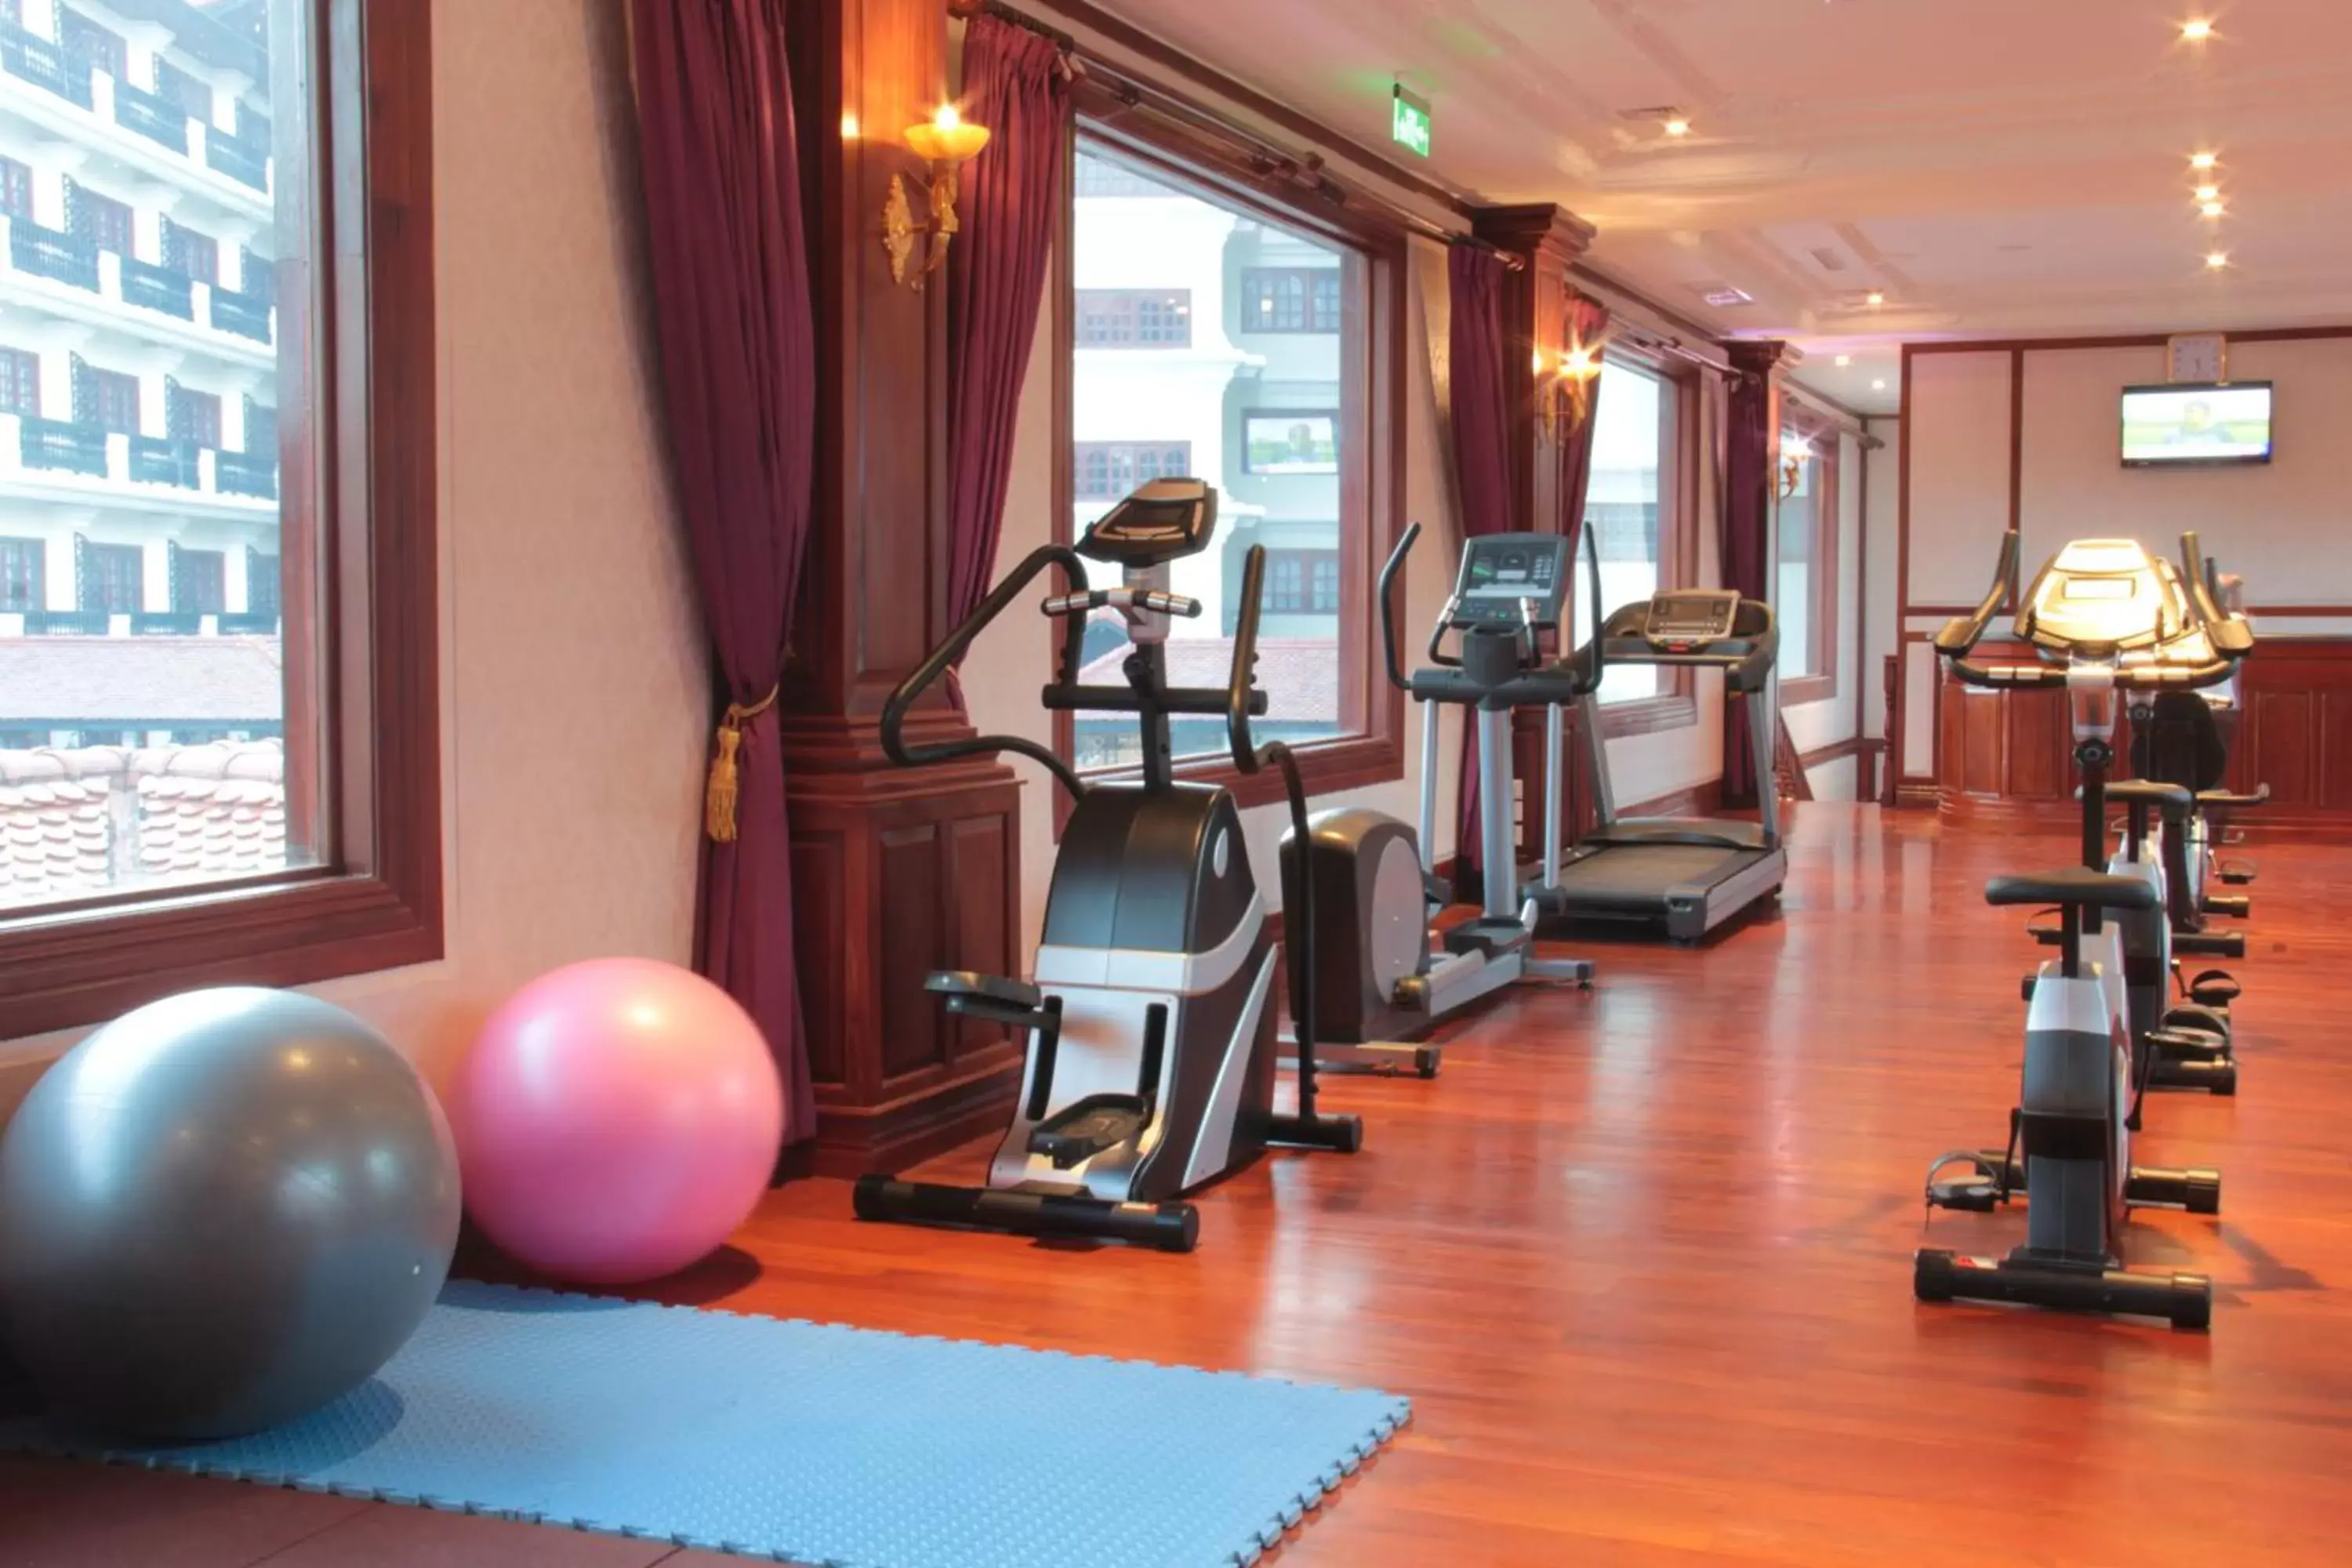 Fitness centre/facilities, Fitness Center/Facilities in Regency Angkor Hotel